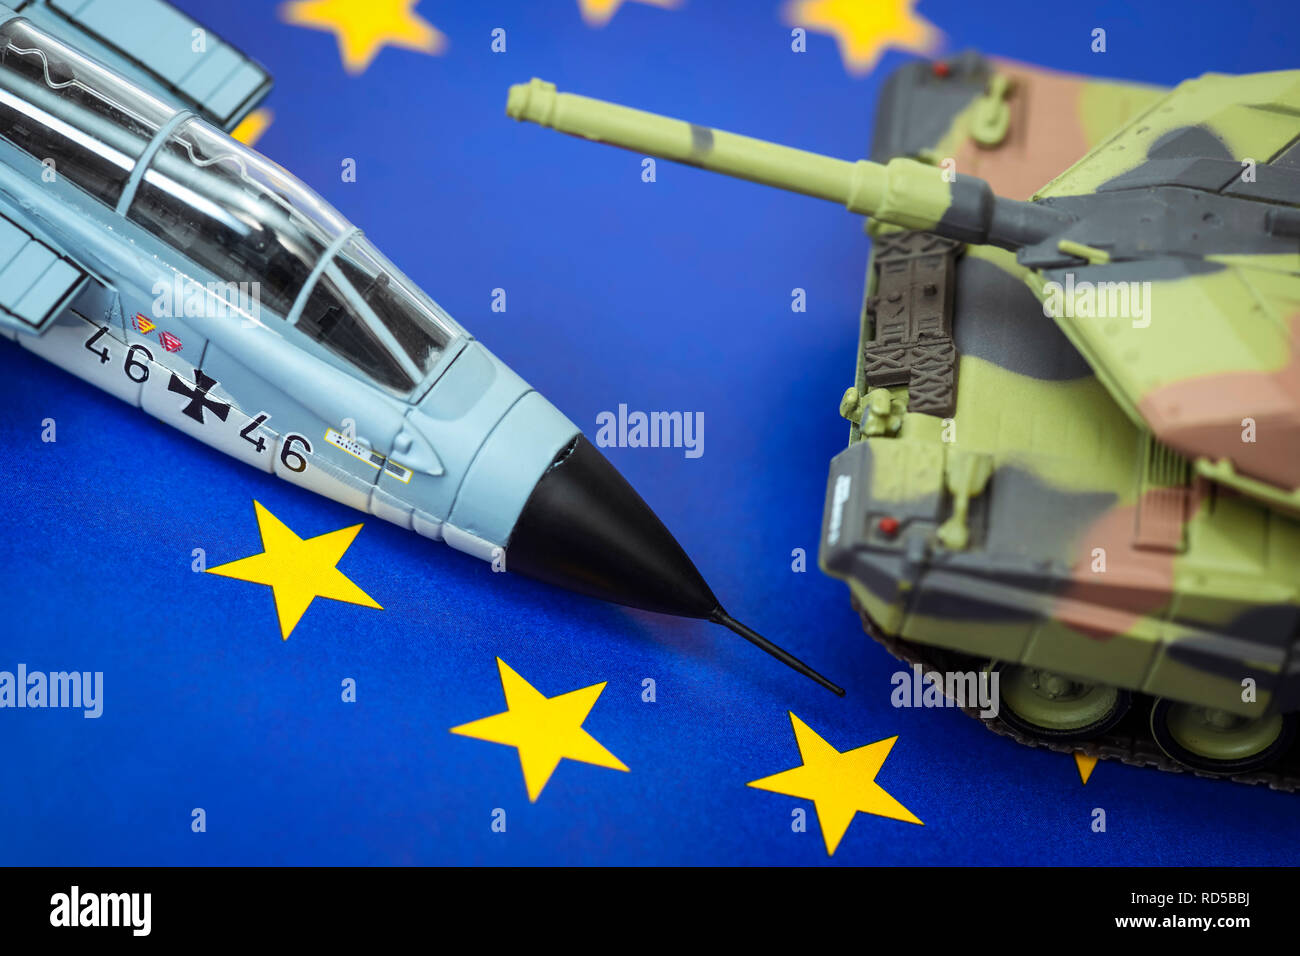 Serbatoio in miniatura e jet militare sulla bandiera UE, foto simbolico per un esercito europeo, Miniaturpanzer und Militärjet auf UE-Fahne, Symbolfoto für eine europä Foto Stock